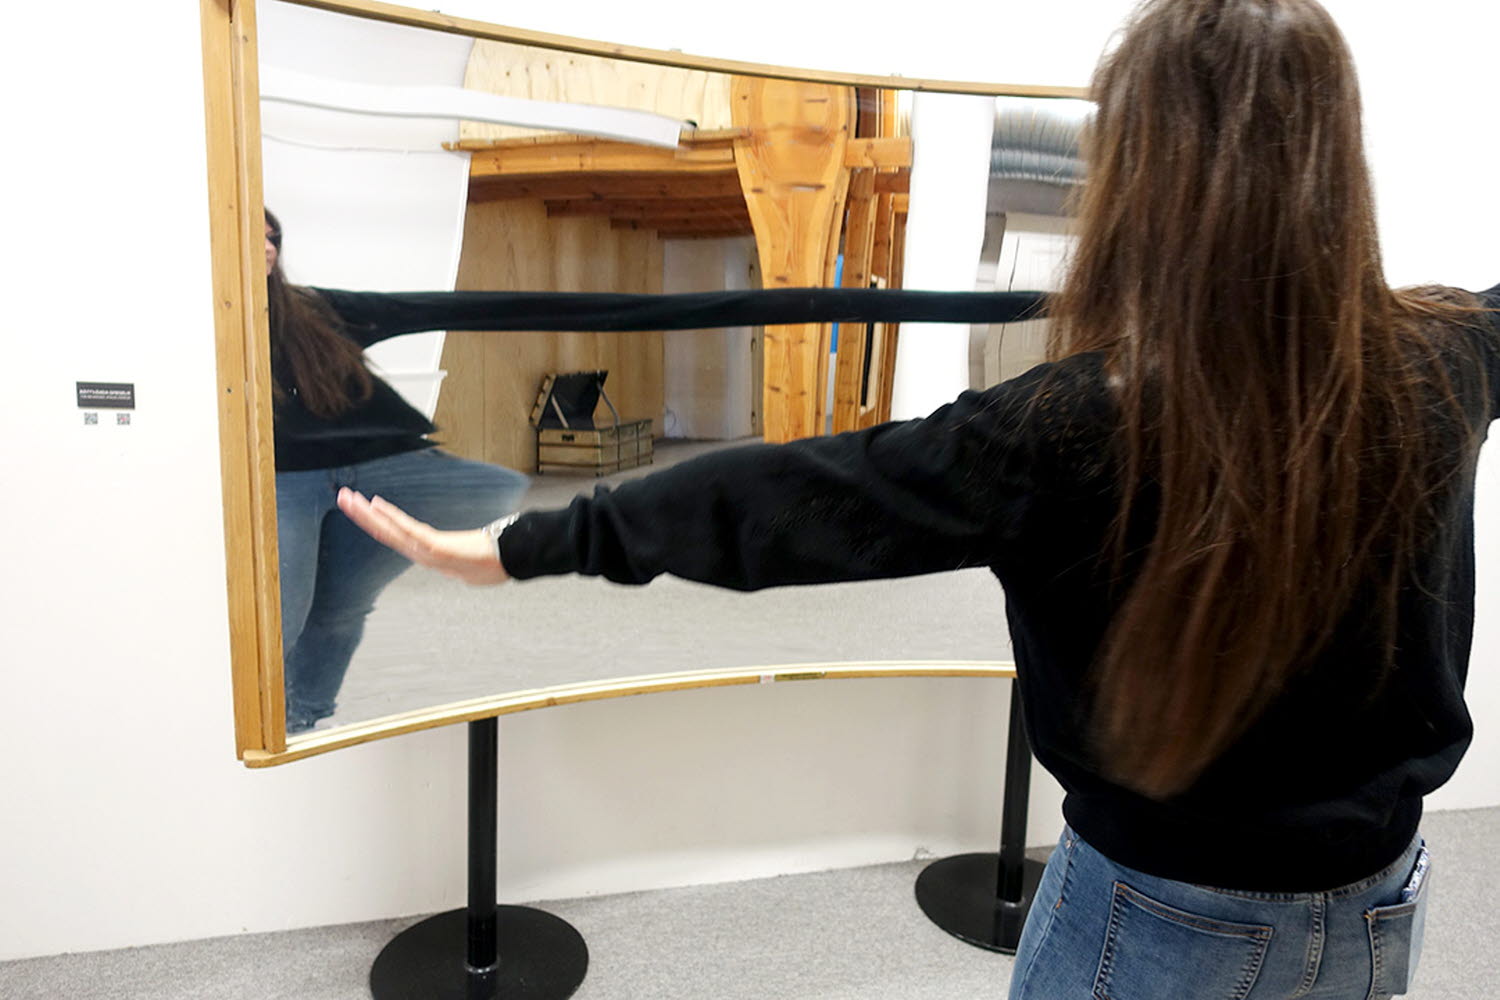 En person provar experimentet Rättvända spegeln